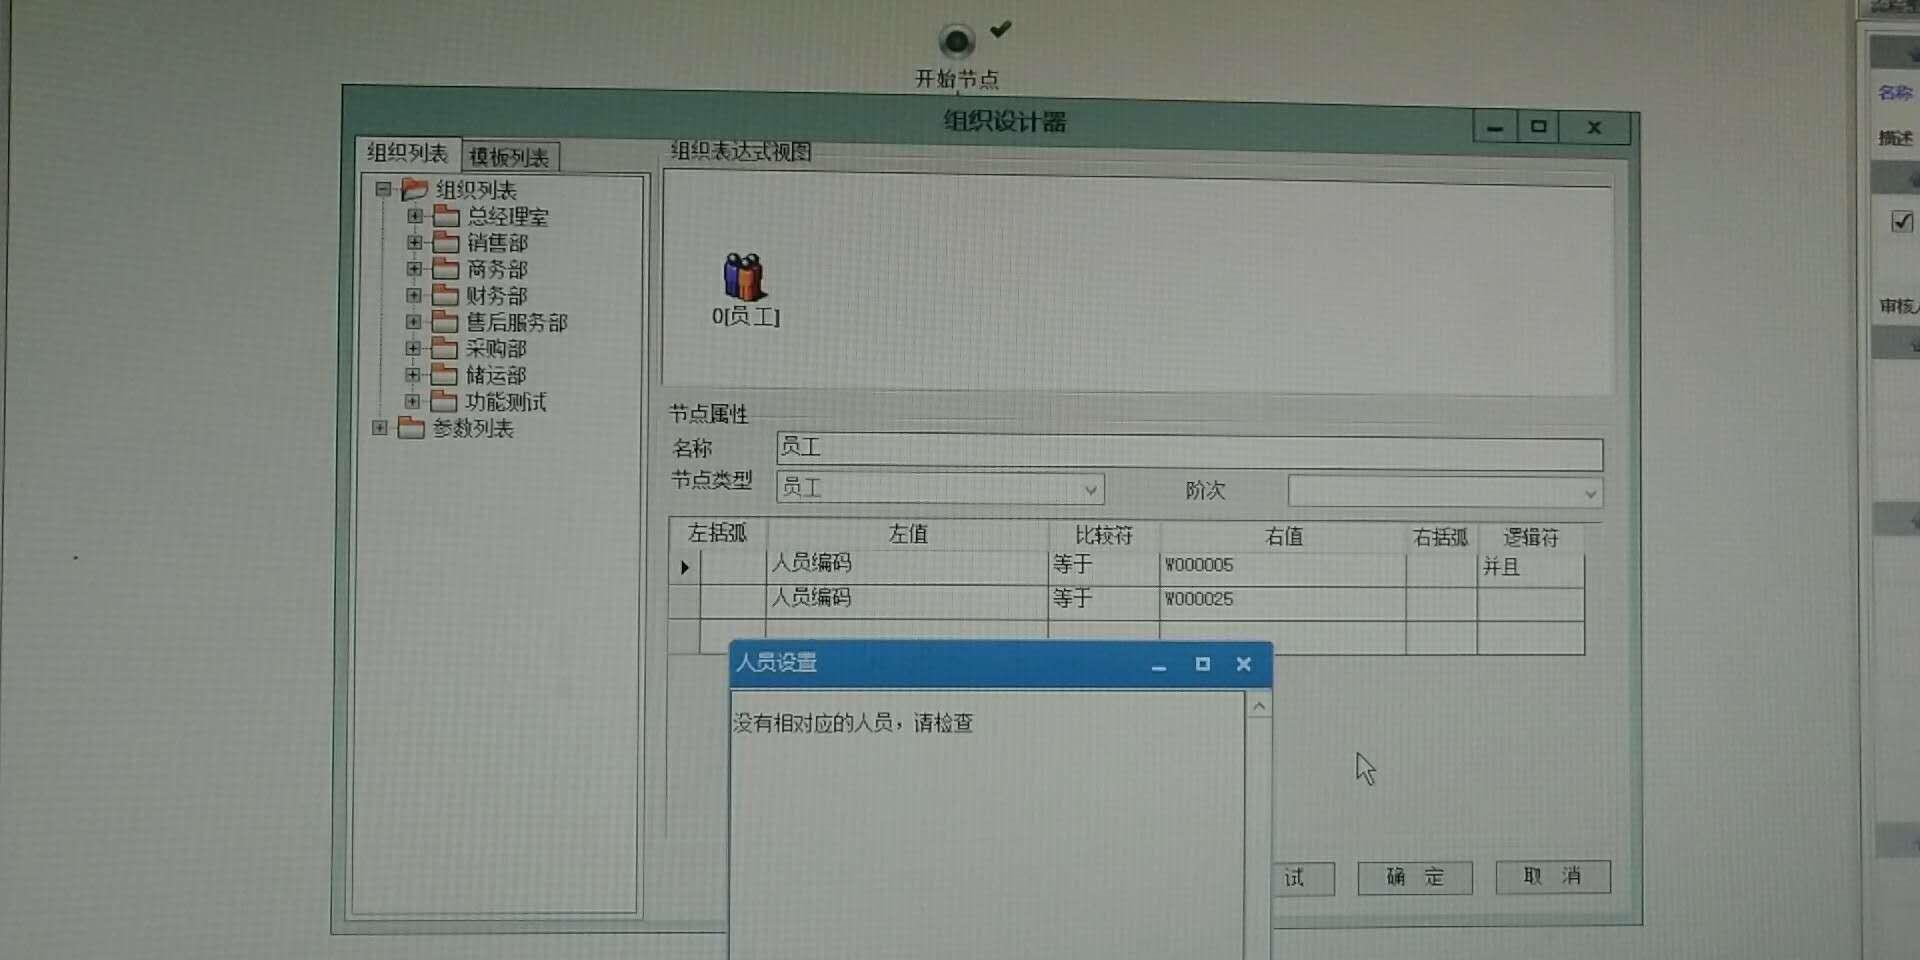 我家云财务软件:天津市金蝶财务软件